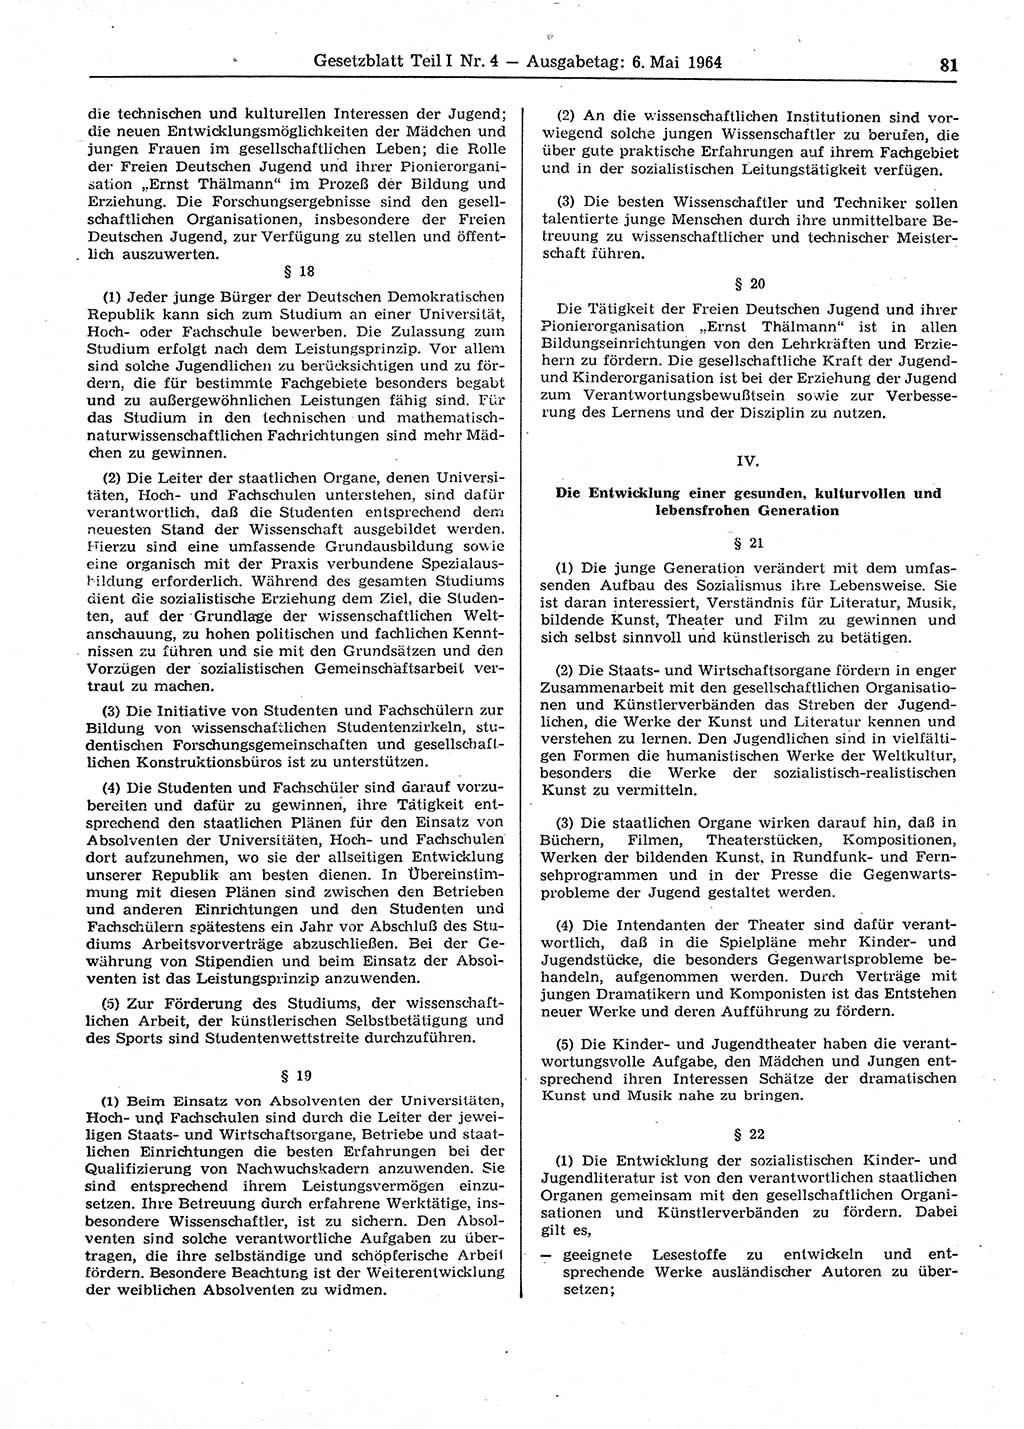 Gesetzblatt (GBl.) der Deutschen Demokratischen Republik (DDR) Teil Ⅰ 1964, Seite 81 (GBl. DDR Ⅰ 1964, S. 81)